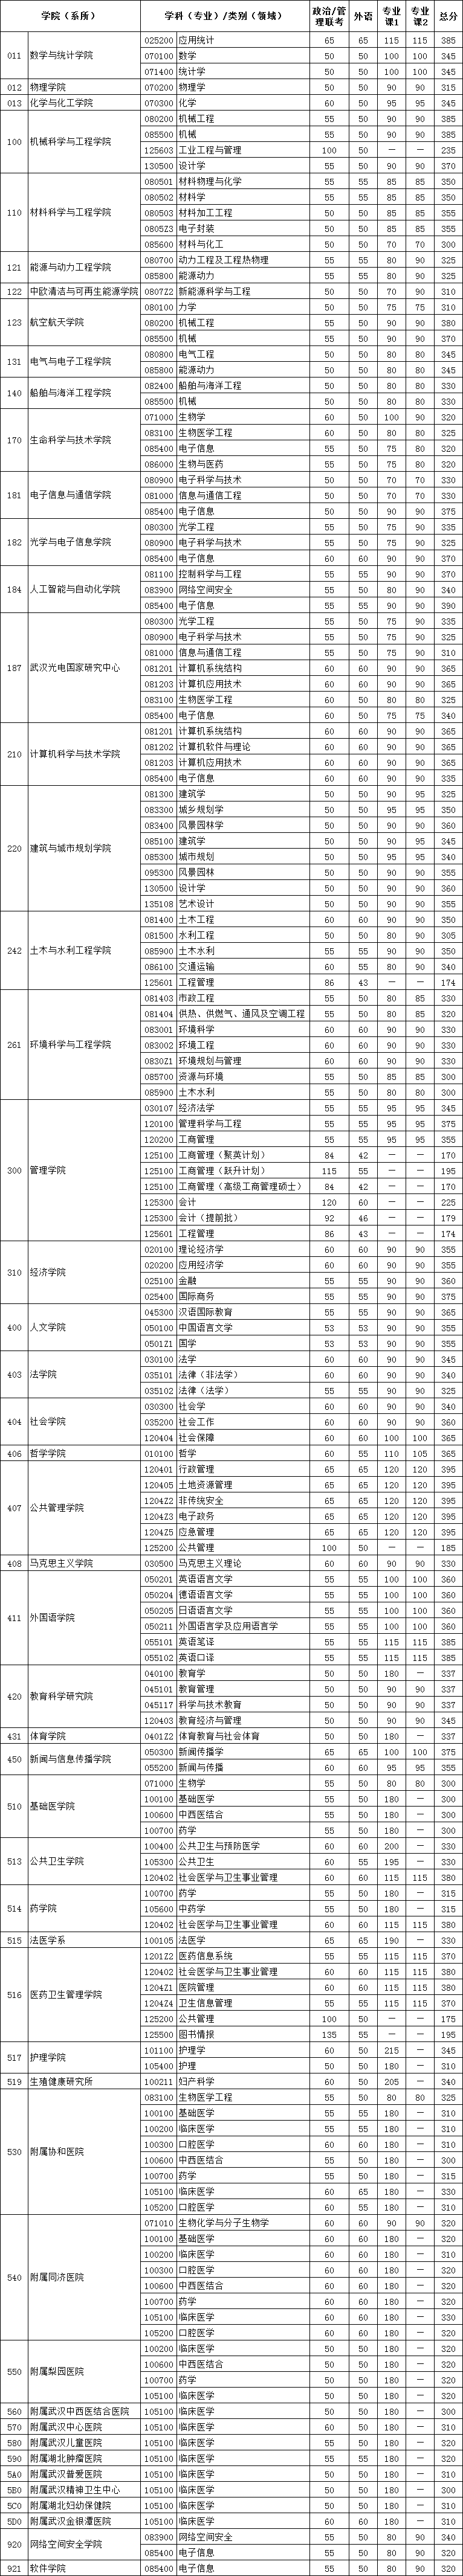 华中科技大学2021考研复试分数线